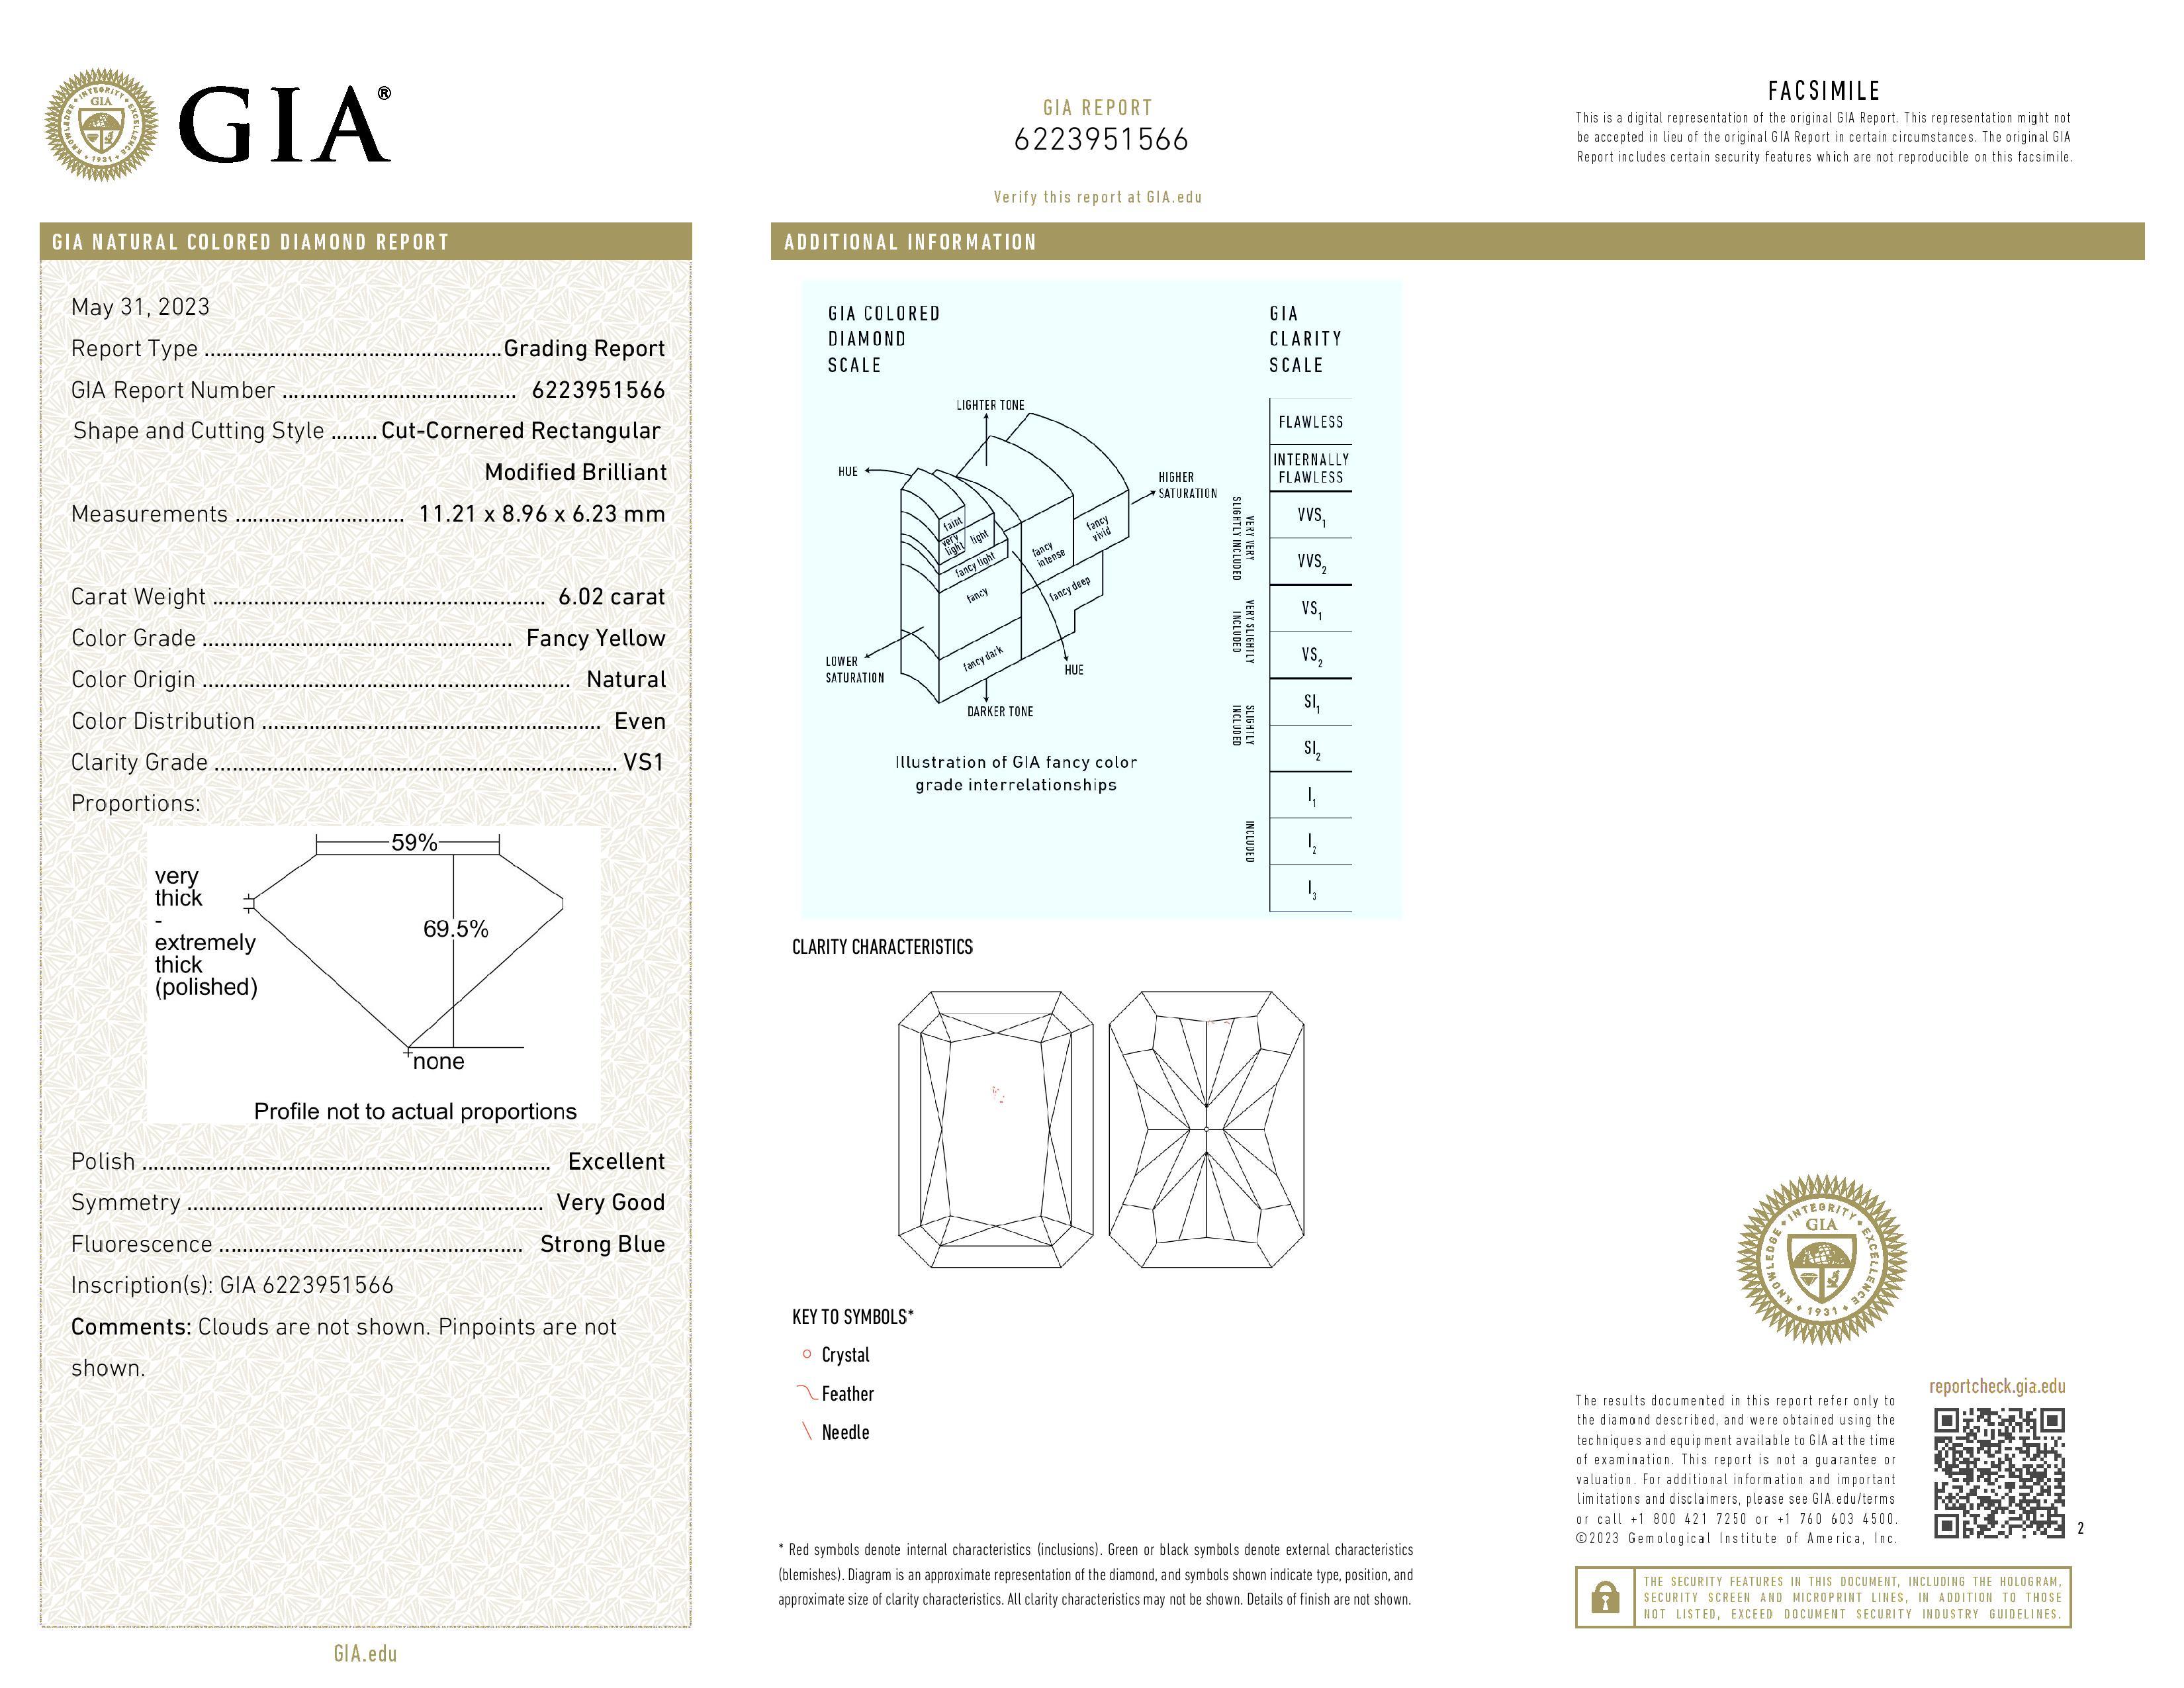 Ein exquisiter Diamant im Brillantschliff mit einem Wert von 6,02, zertifiziert von GIA. Wir können das Design nach Ihren Wünschen gestalten, wobei je nach Design zusätzliche Gebühren anfallen können.

Form LR_BRILLIANT 
Karat 6,02 
Farbe FANCY